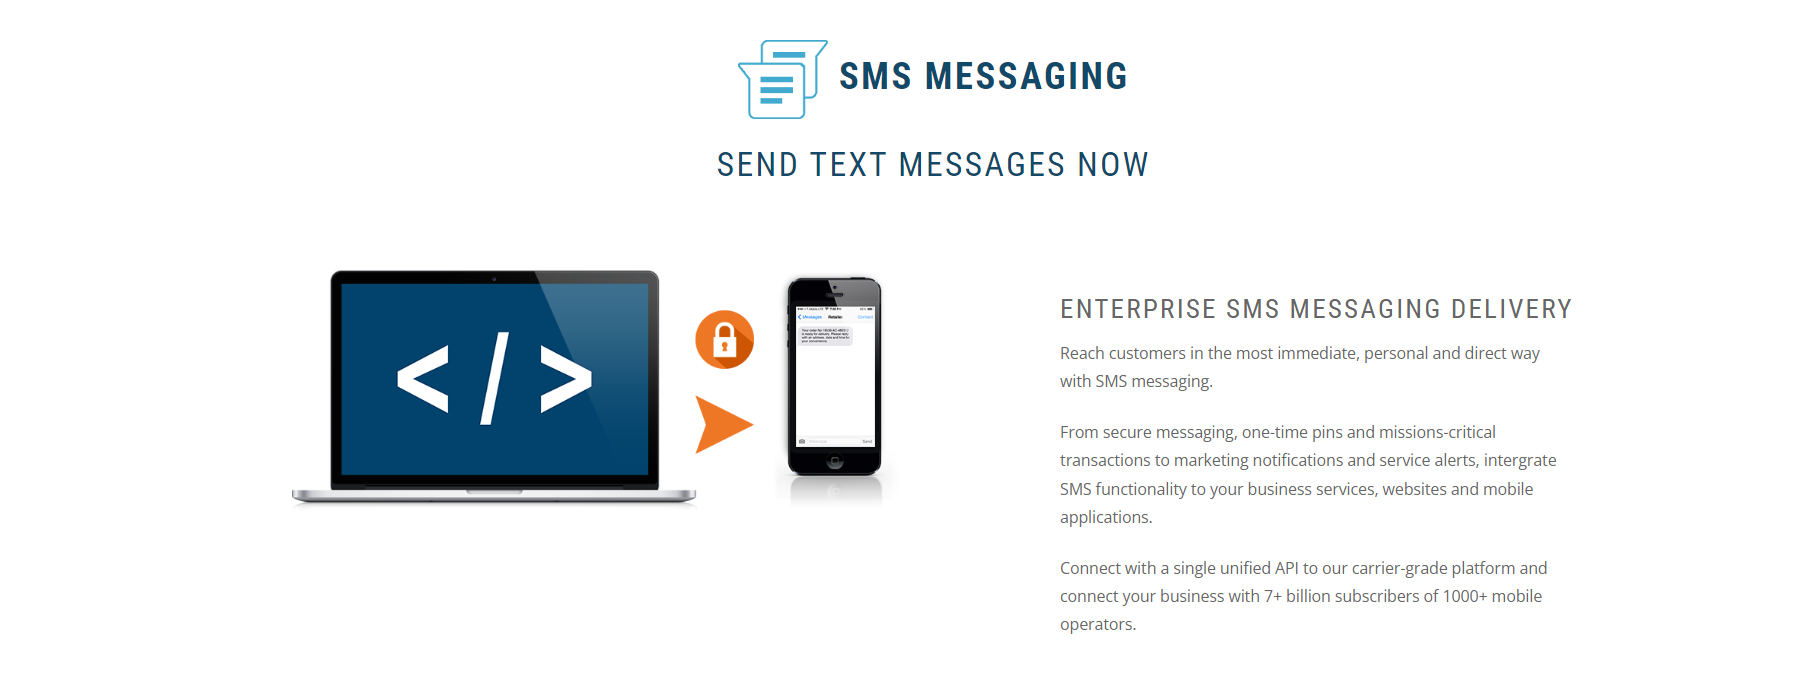 MobiWeb Enterprise SMS